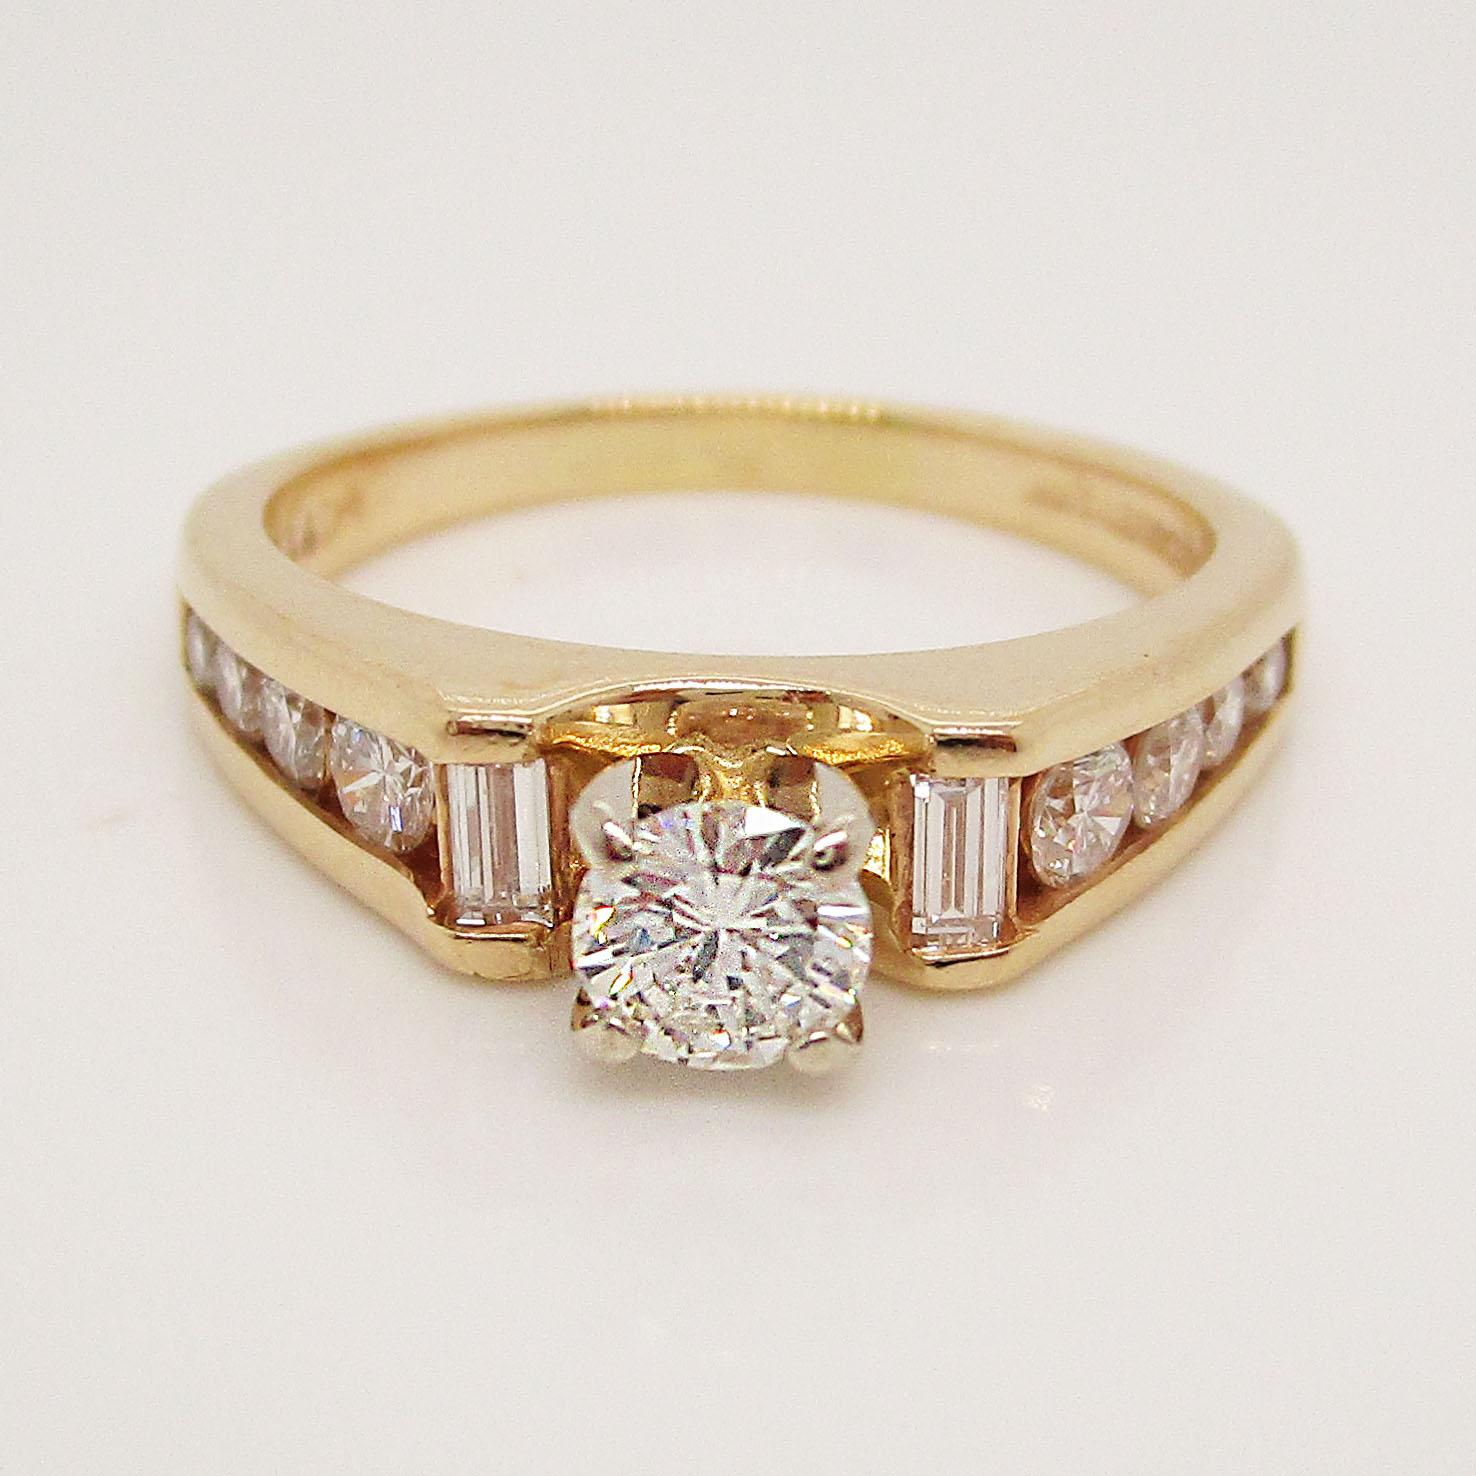 Dieser wunderschöne Ring aus 14-karätigem Gelbgold hat eine atemberaubende Kollektion von Baguette- und runden Diamanten, die den strahlend weißen runden Mittelstein betonen. Dieser Ring hat die klassische Schönheit eines traditionellen